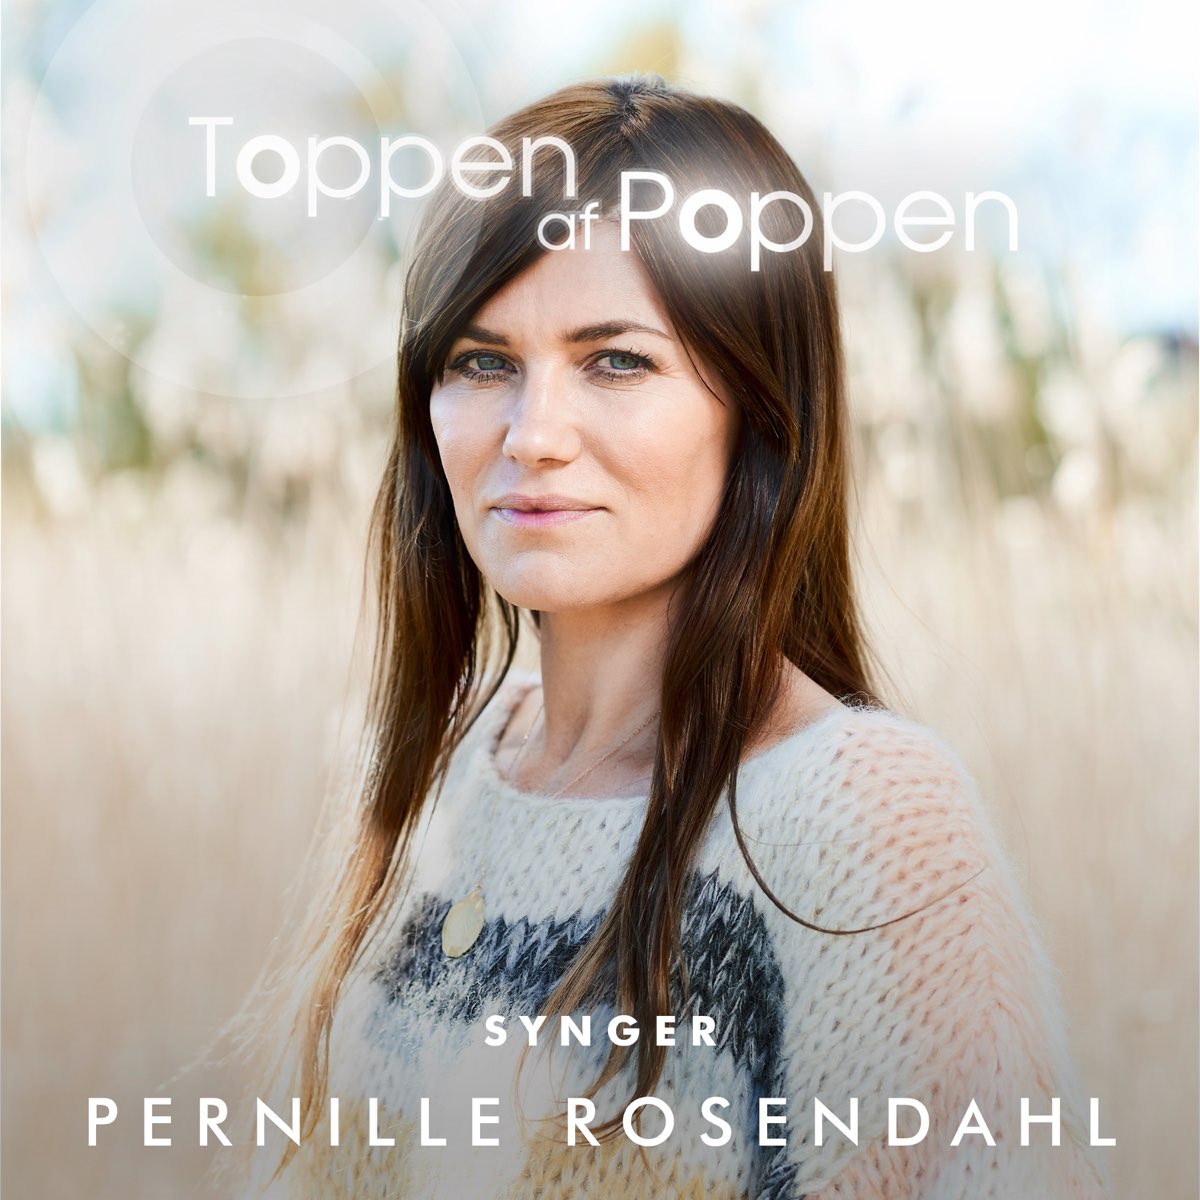 Certifikat Trolley sløring Toppen Af Poppen 2018 synger Pernille Rosendahl - EP by Various Artists on  Apple Music